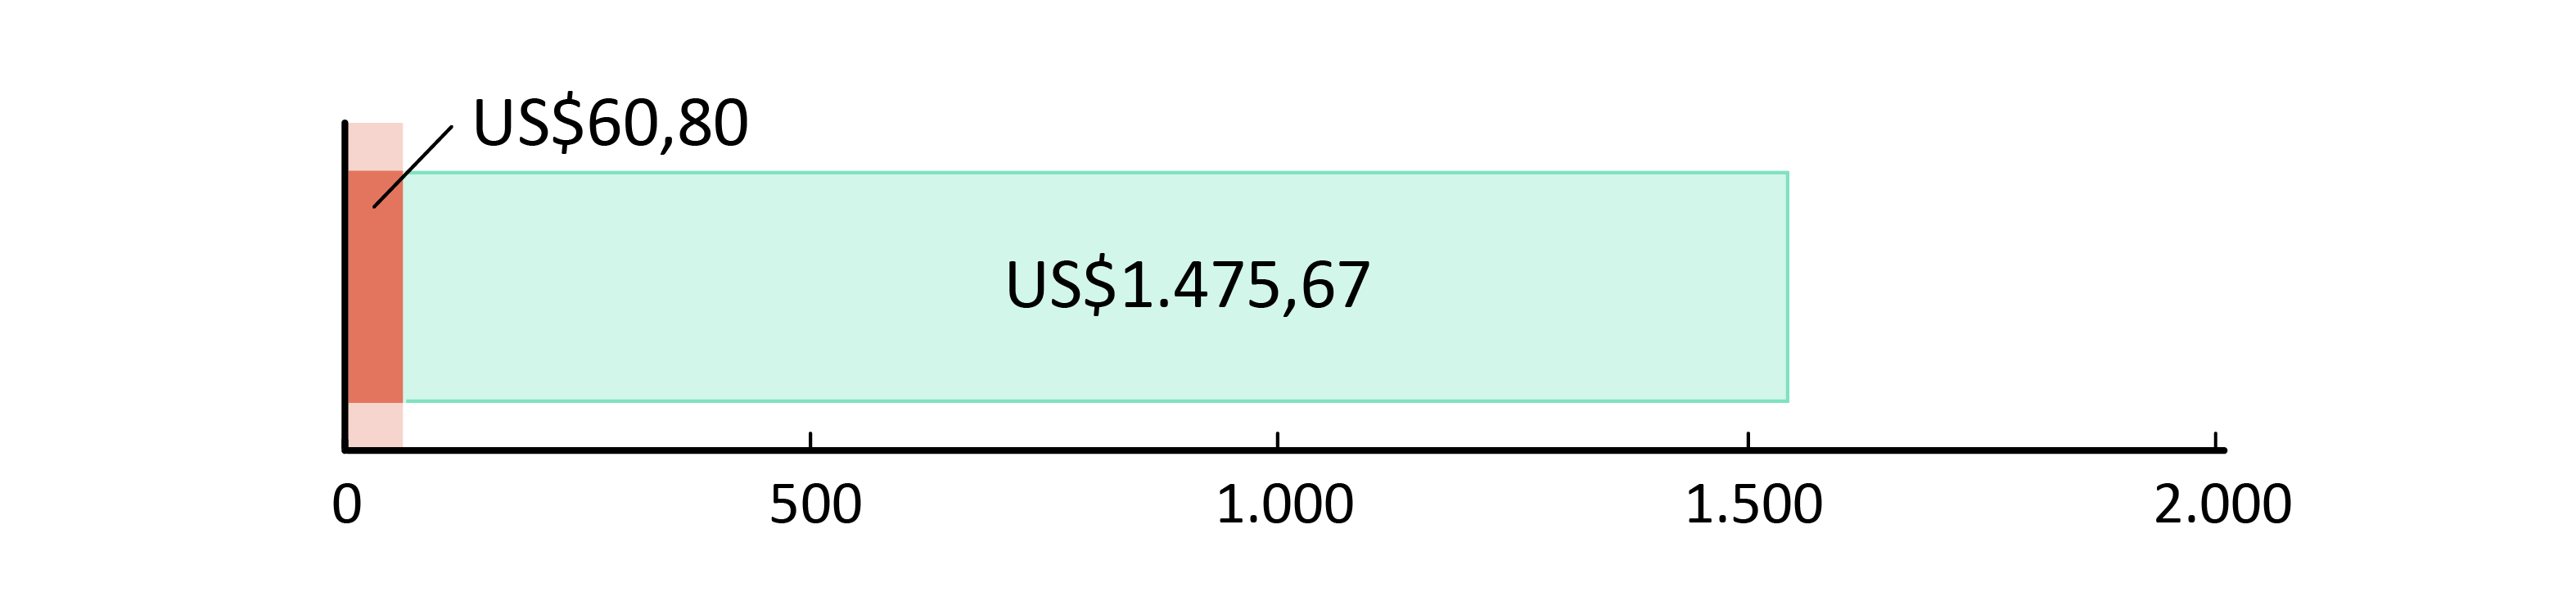 US$60,80 fueron usados; US$1.475,67 restan